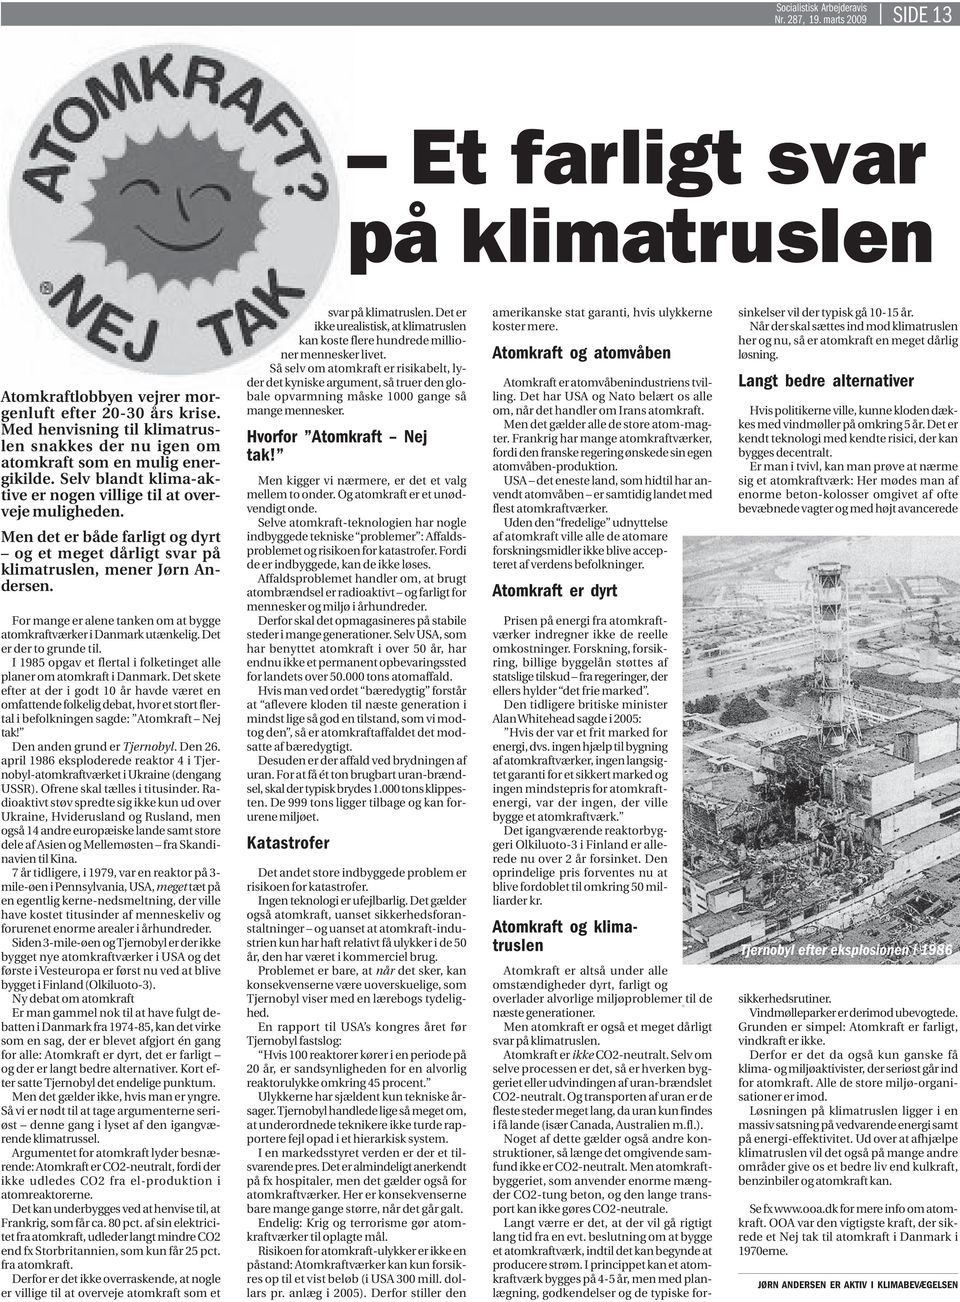 Men det er både farligt og dyrt og et meget dårligt svar på klimatruslen, mener Jørn Andersen. For mange er alene tanken om at bygge atomkraftværker i Danmark utænkelig. Det er der to grunde til.